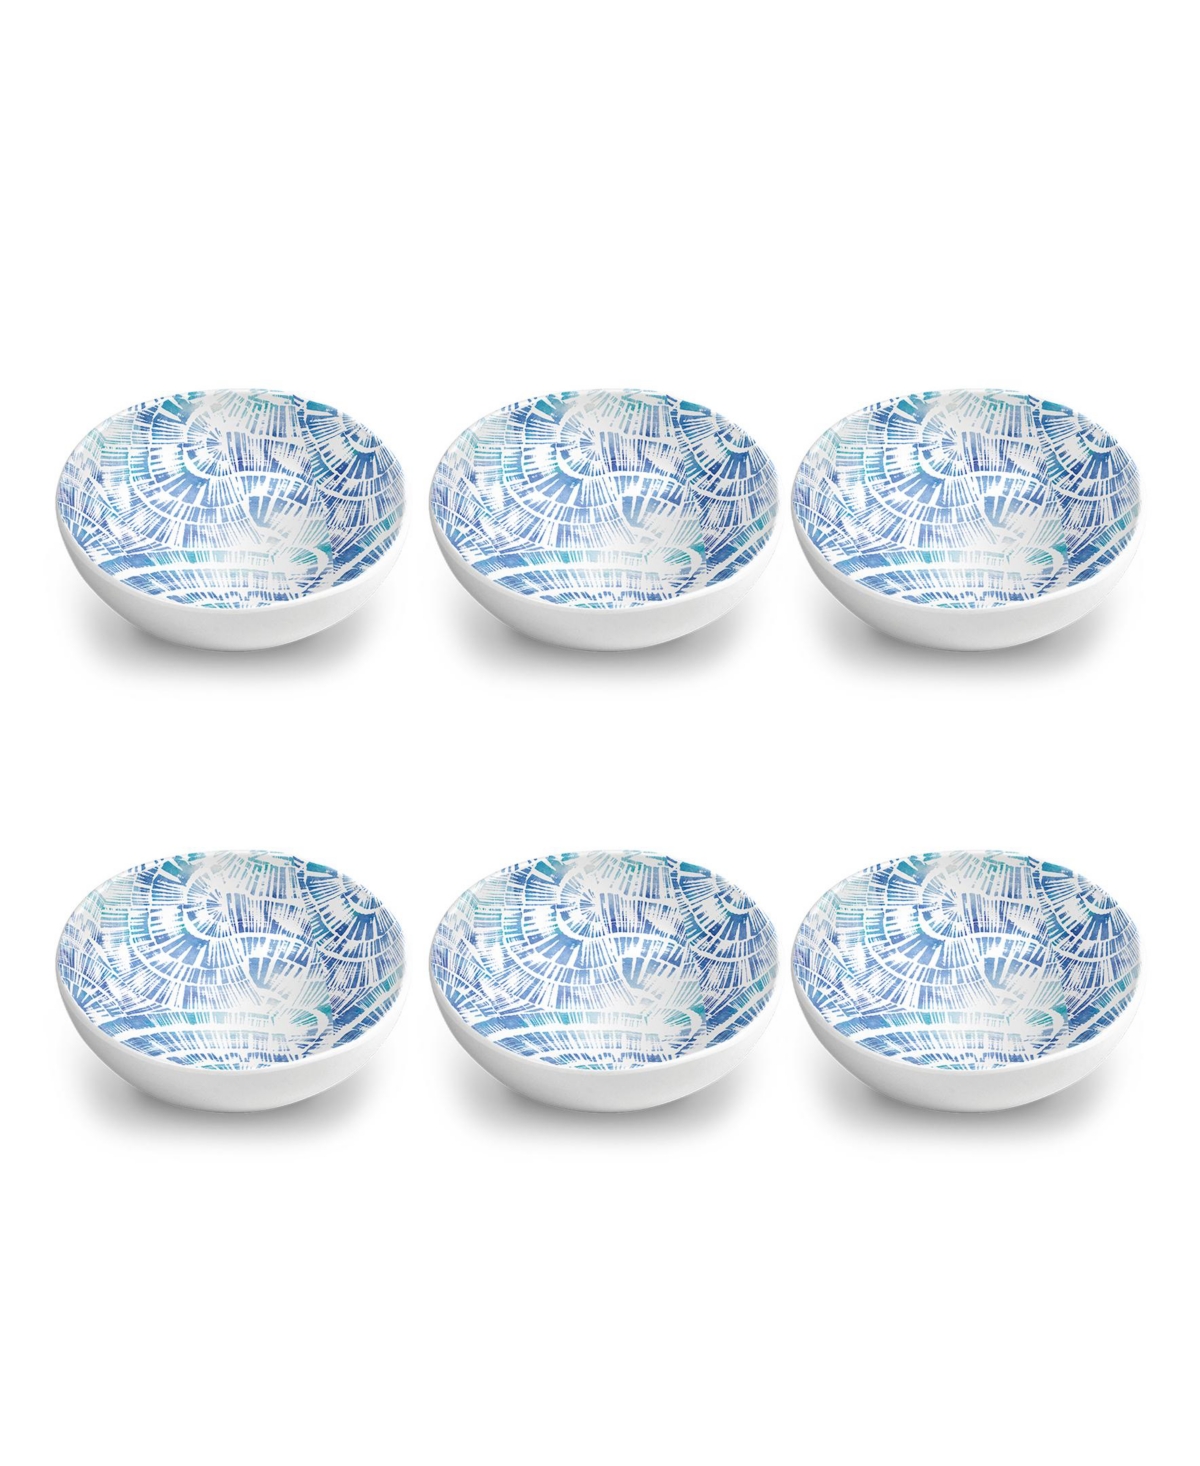 Melamine 7" Coastal Scallops 6-Piece Bowl Set, 34 oz - Coastal Blue, Teal, White